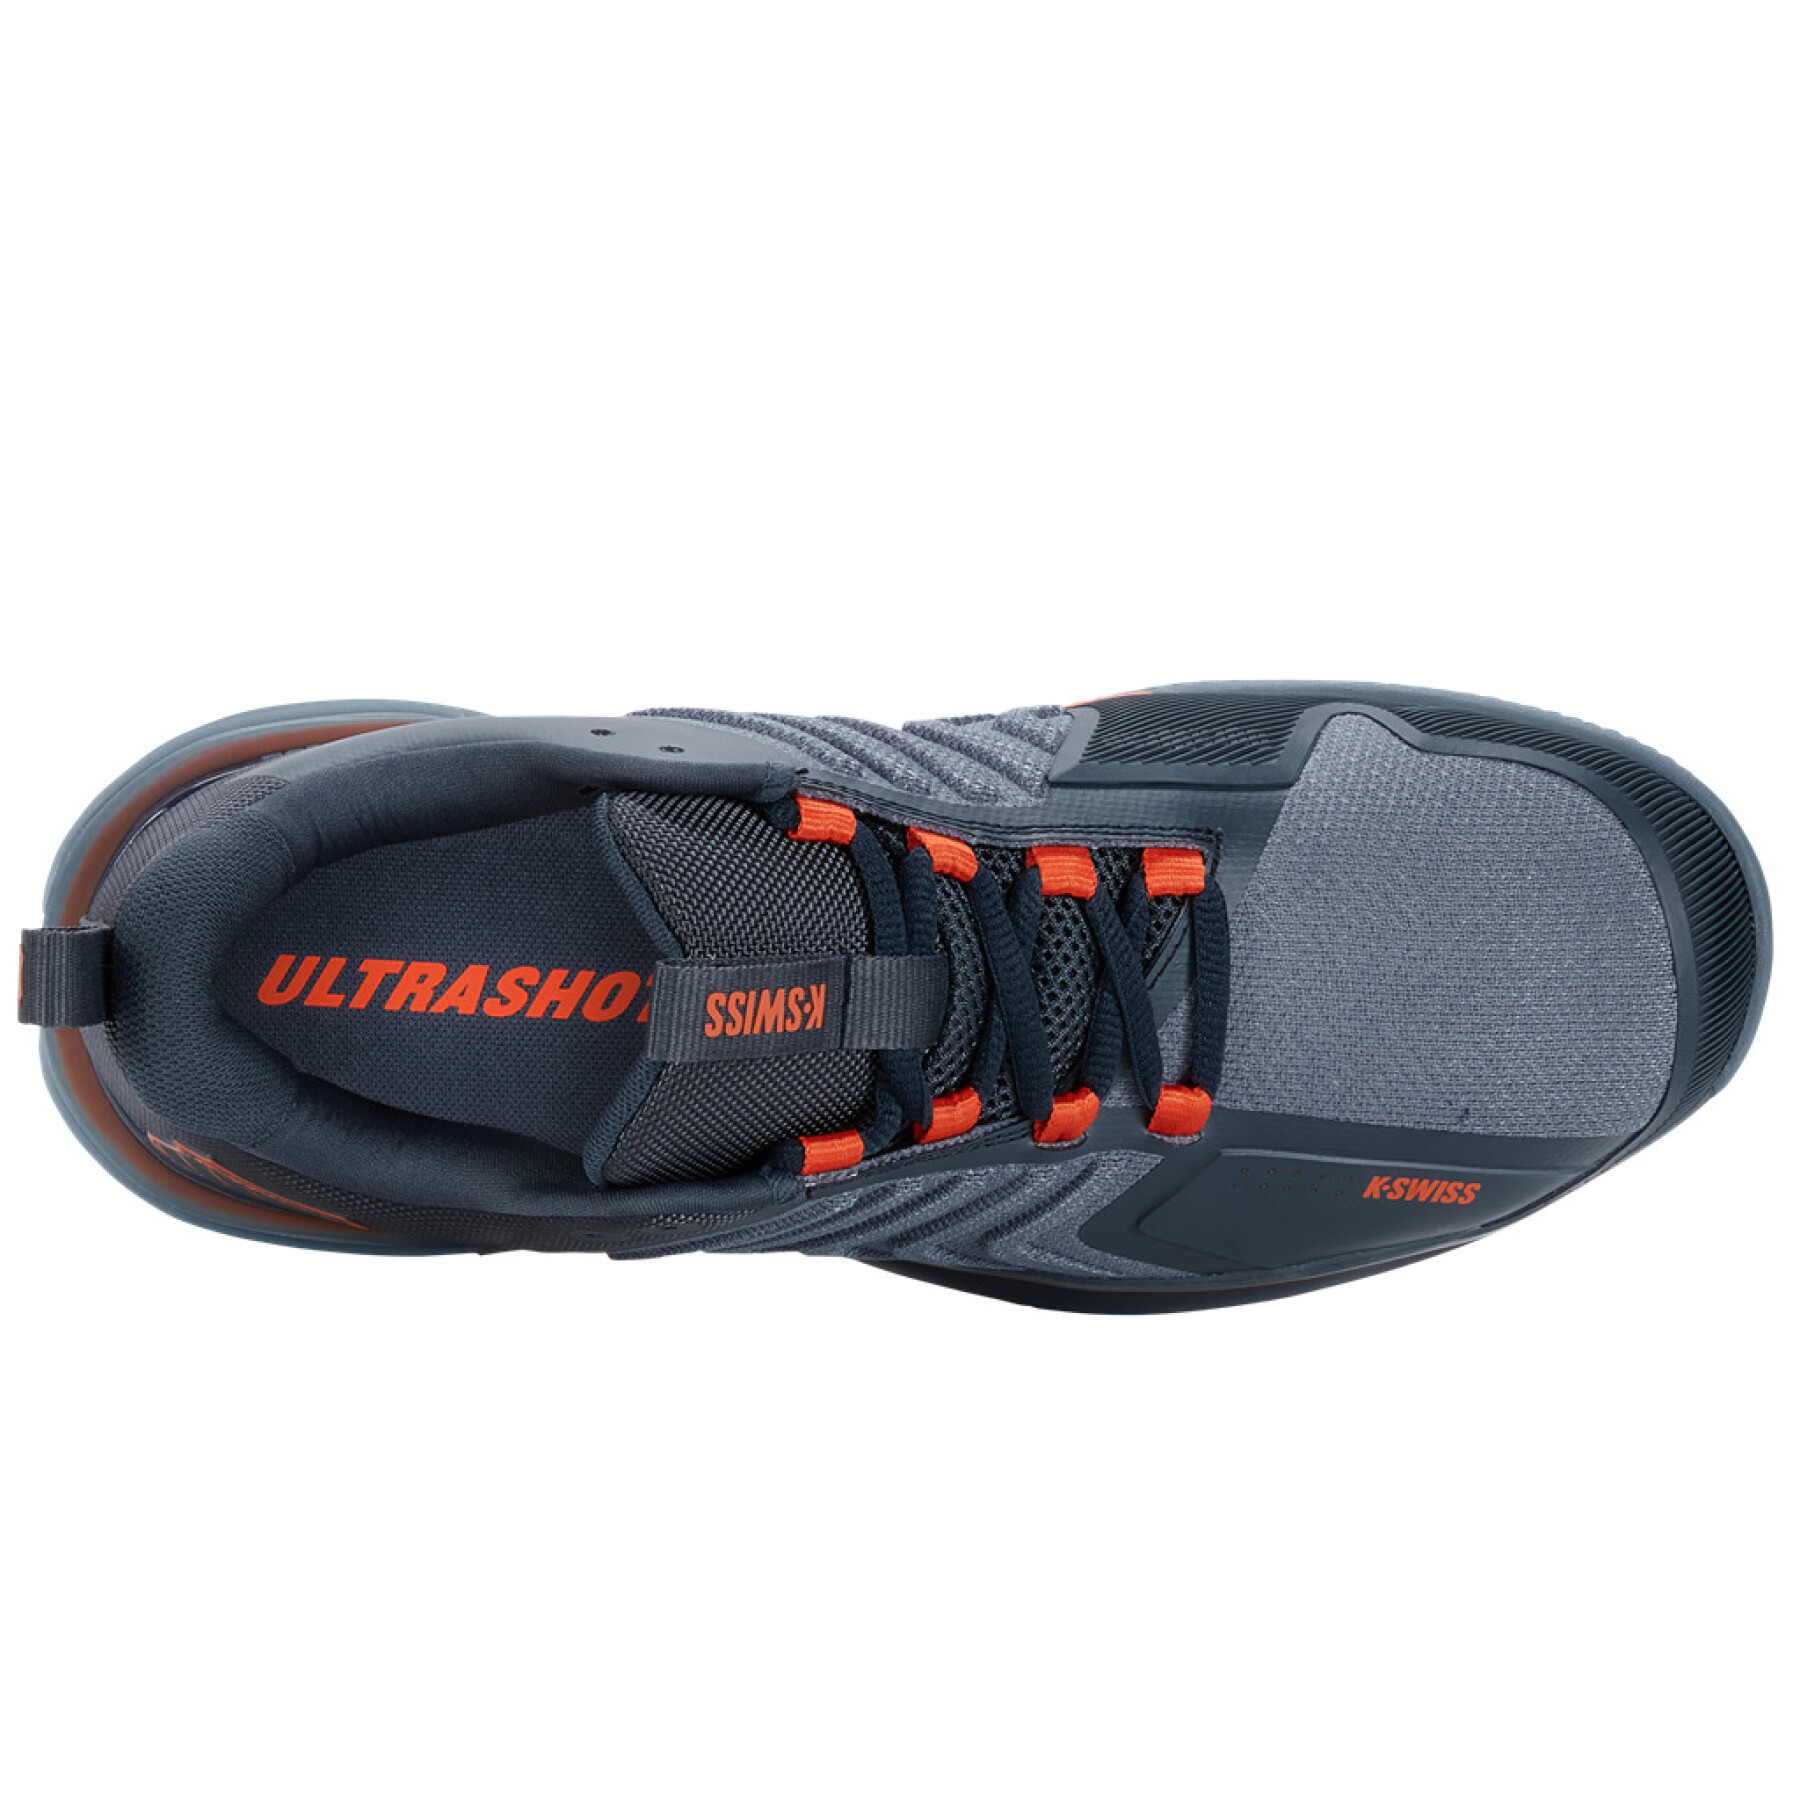 Sapatos de ténis K-Swiss Ultrashot 3 HB